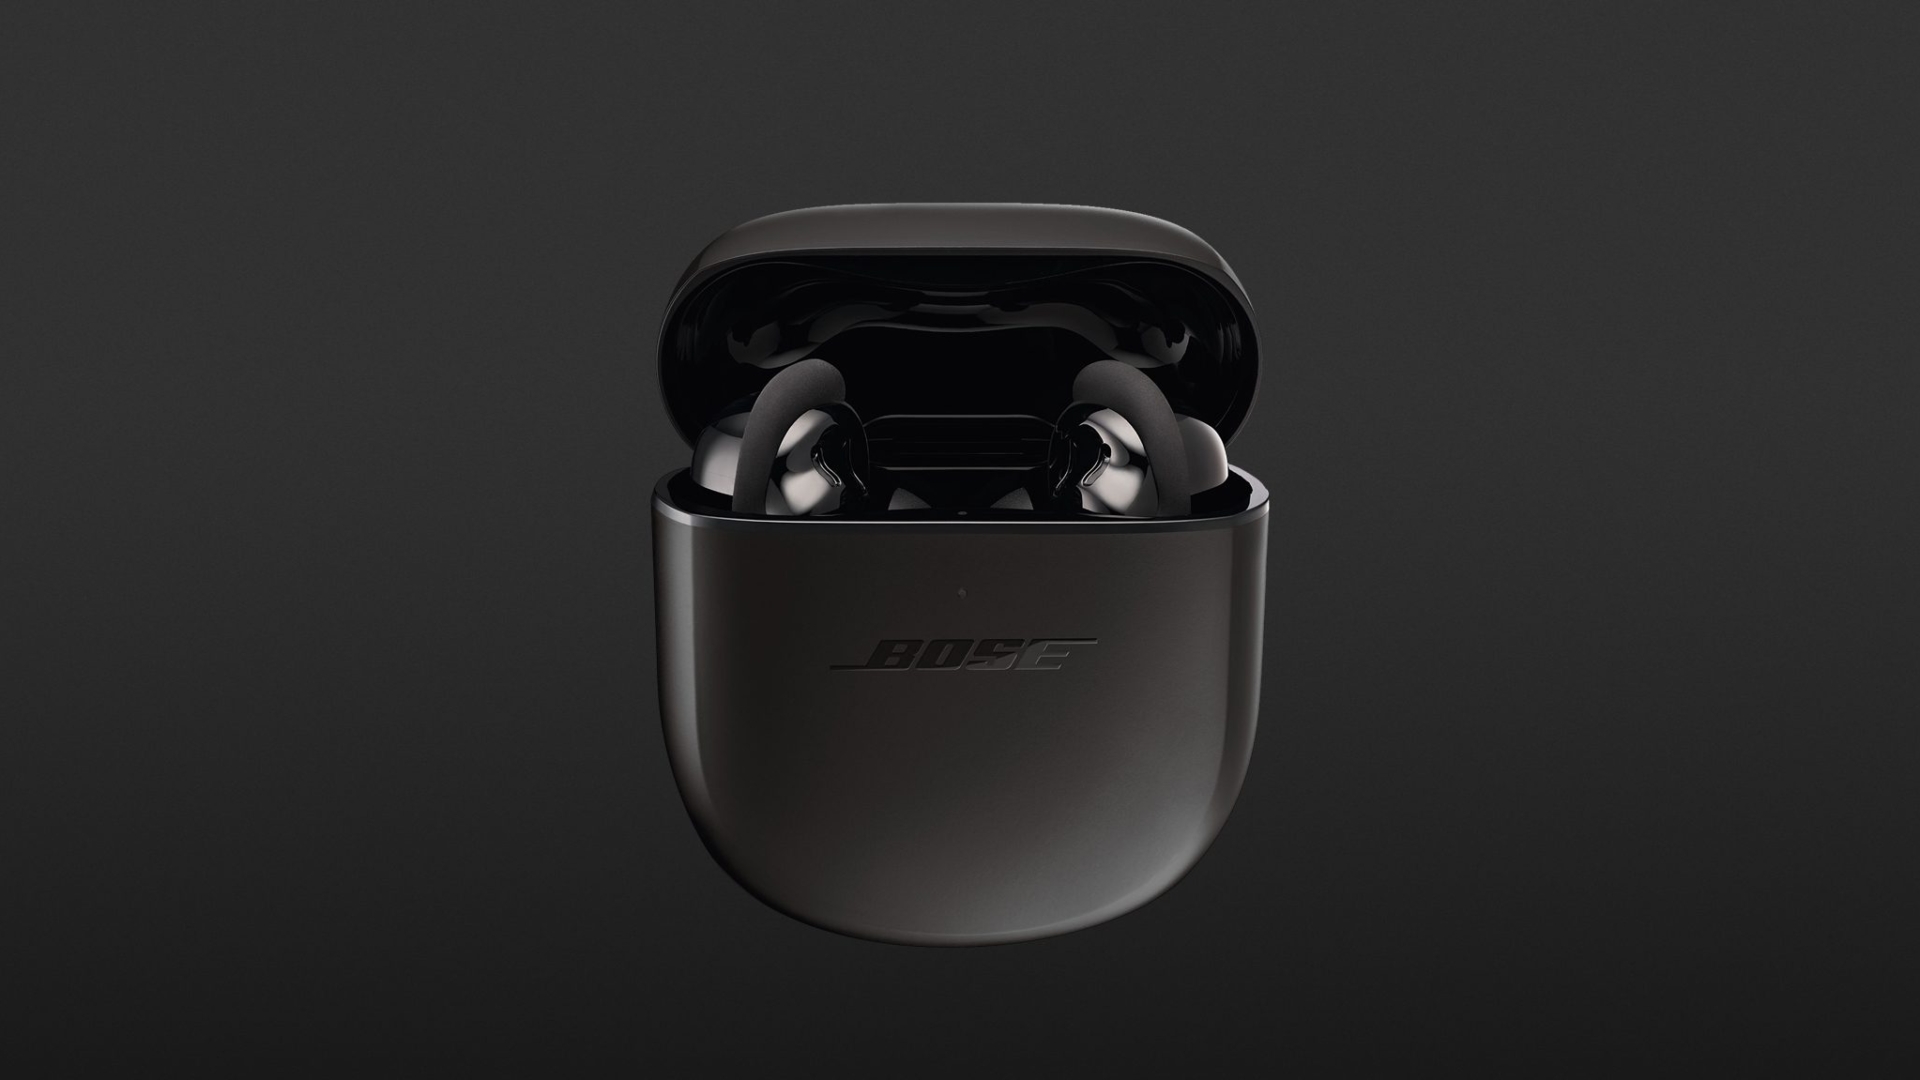 Bose QuietComfort Earbuds II Black